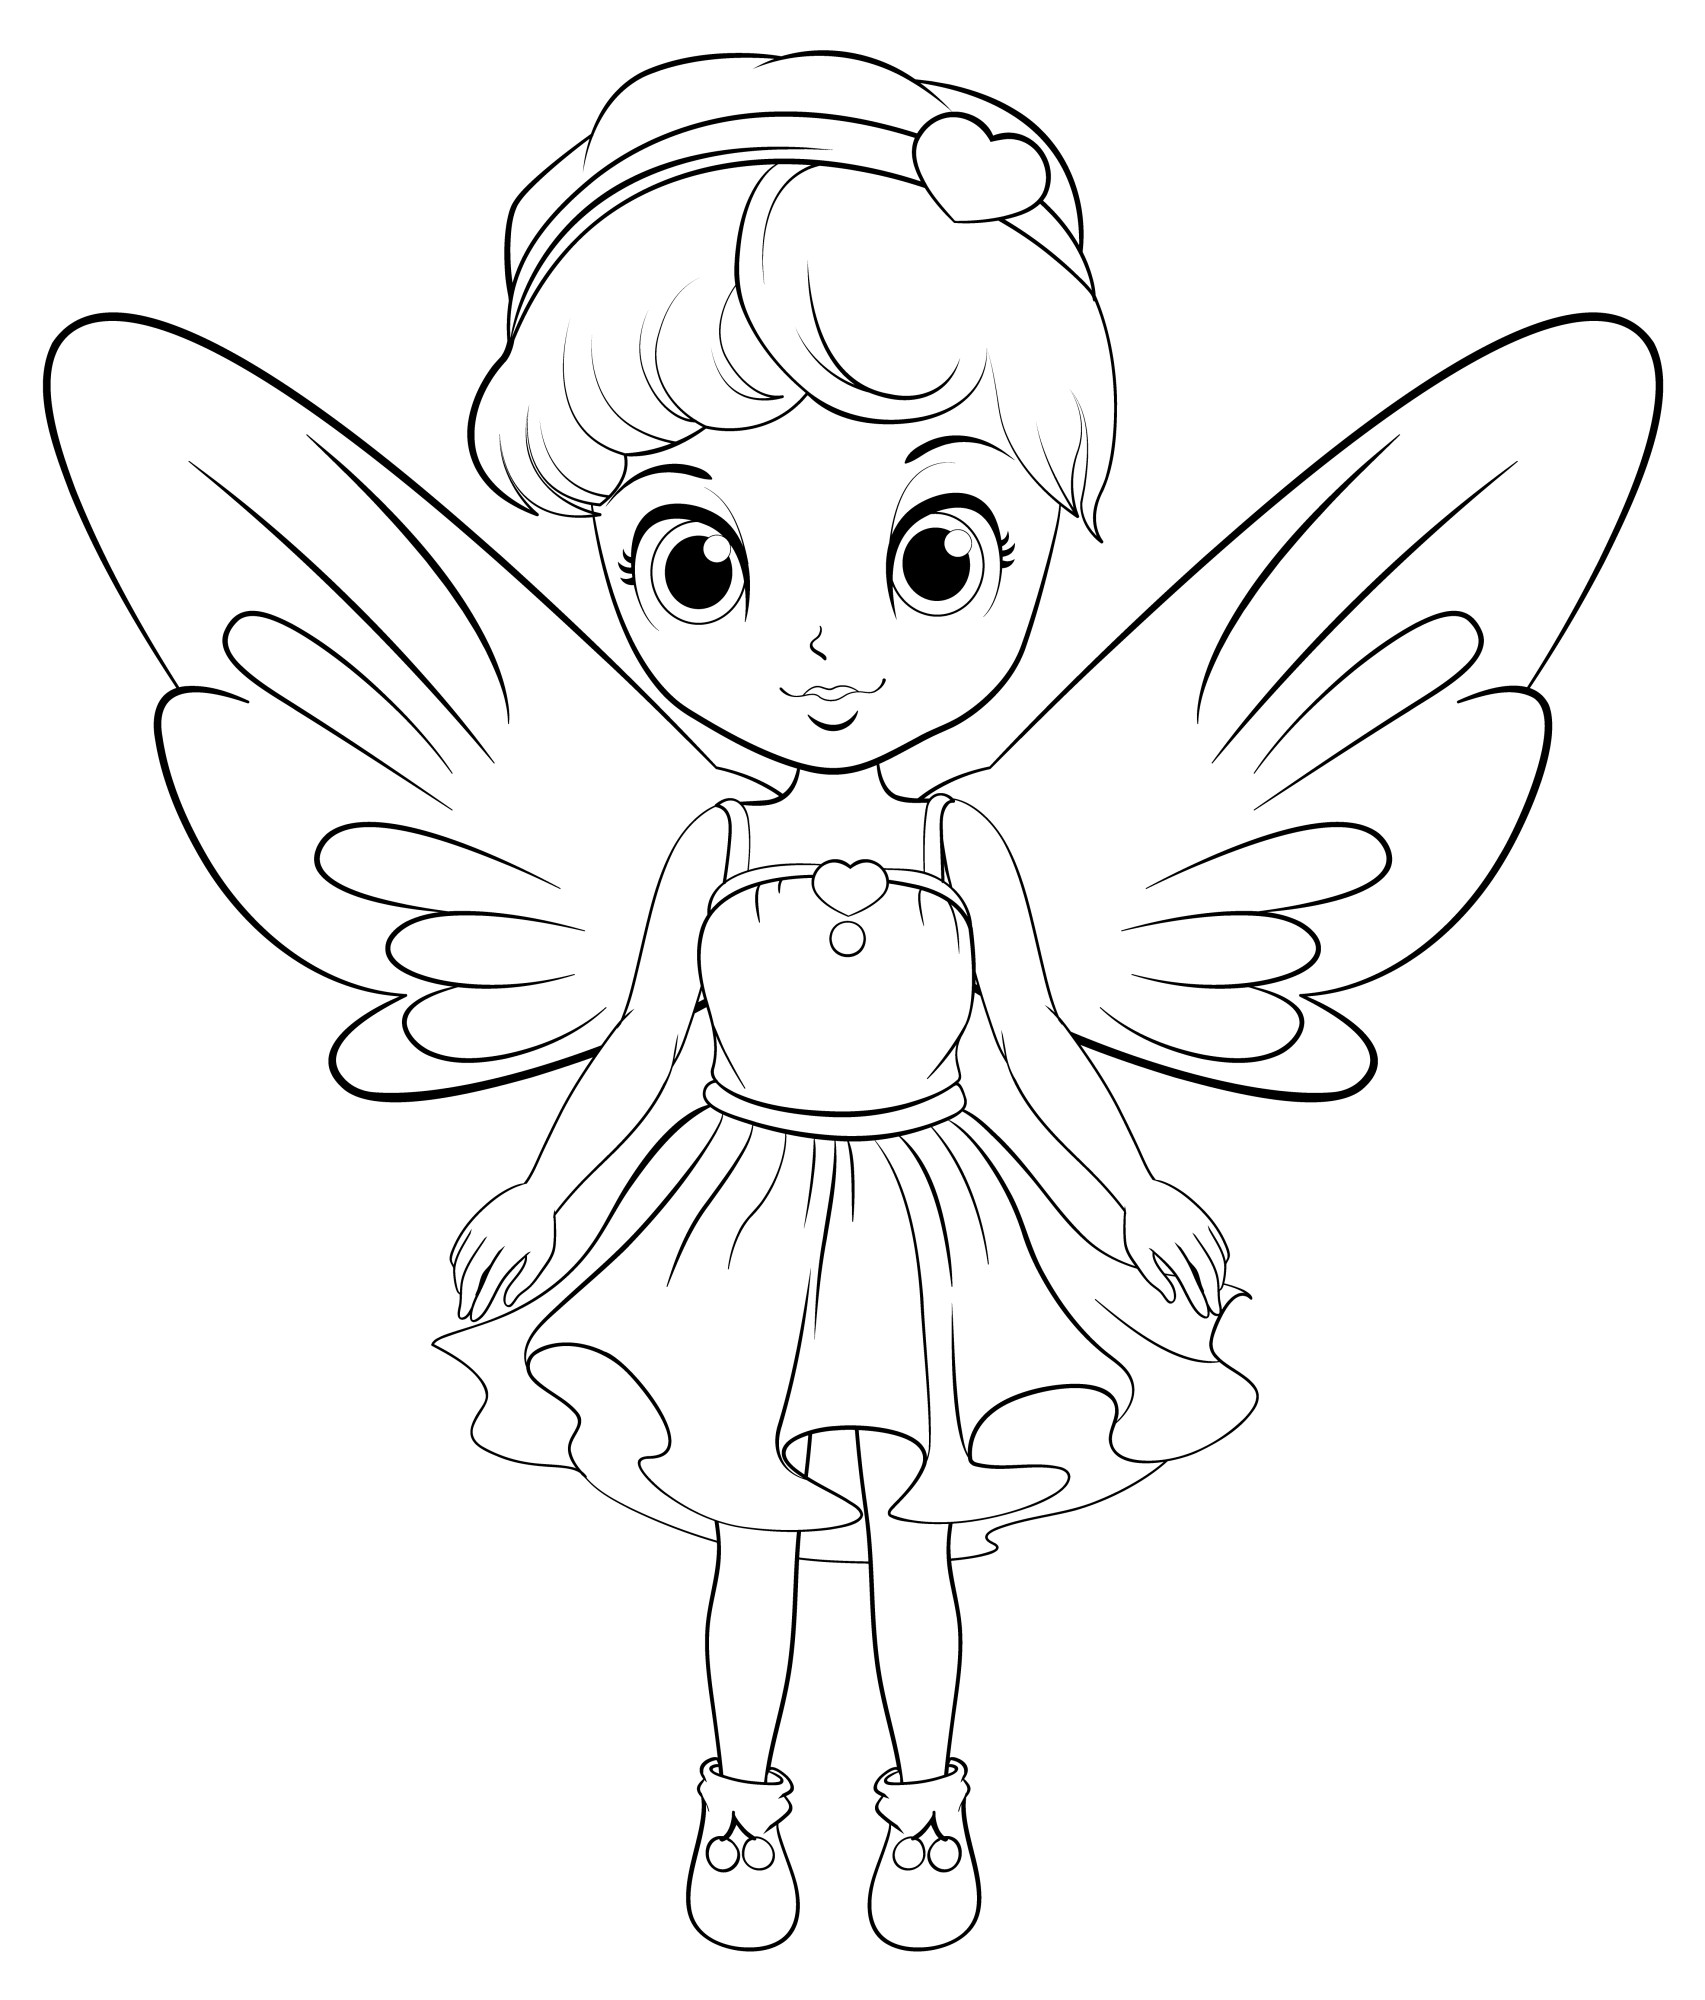 Раскраска для детей: девочка с большими крыльями бабочки